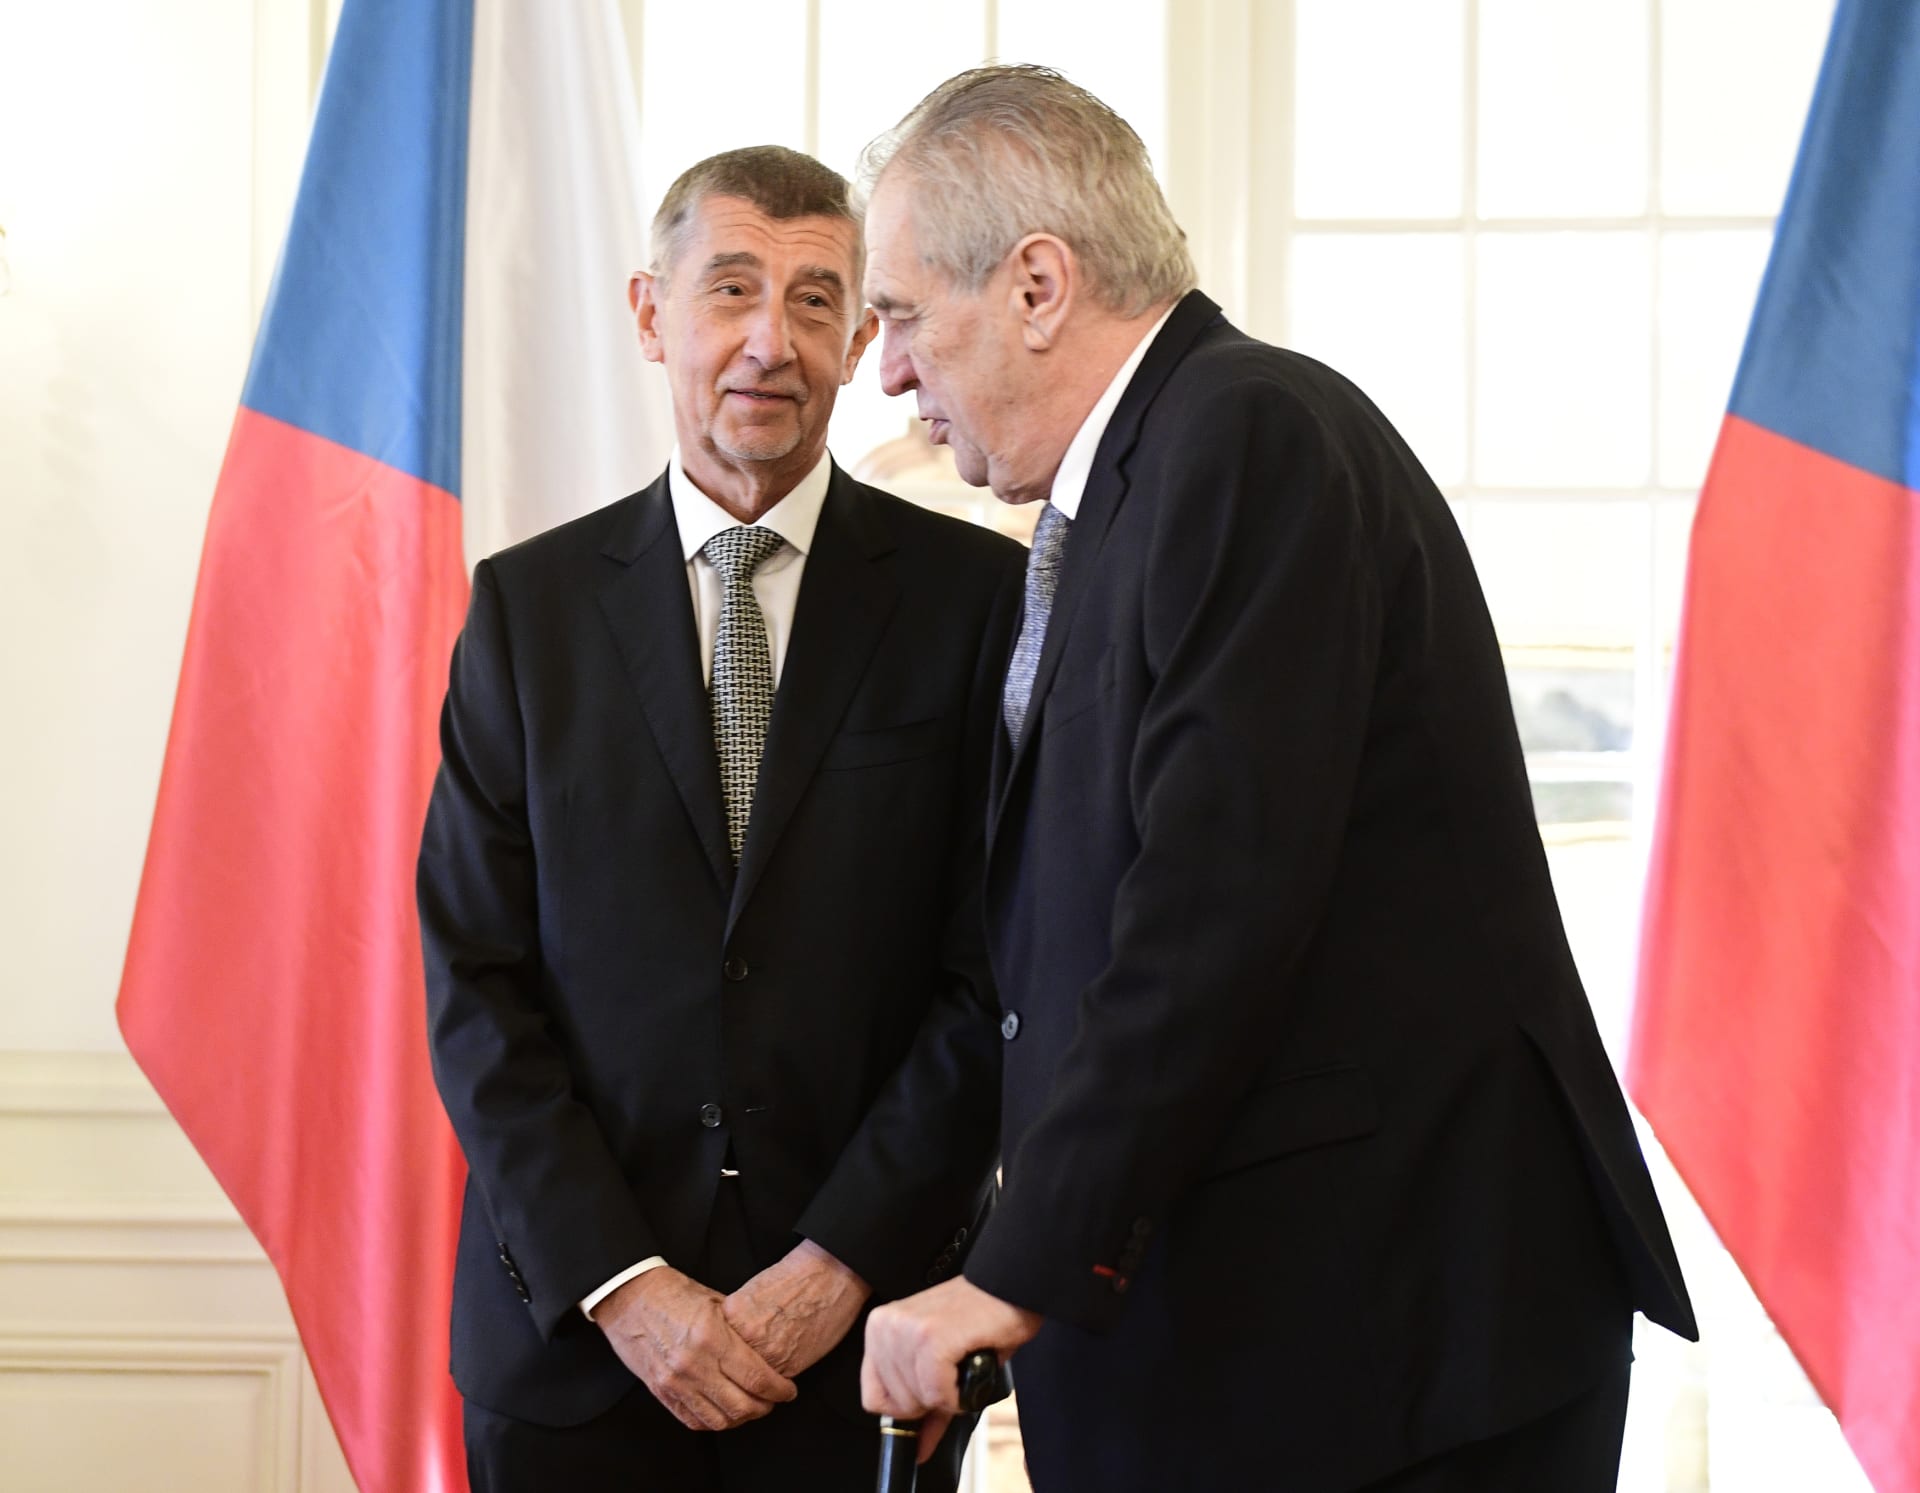 Expremiér Andrej Babiš (ANO) a dosluhující prezident Miloš Zeman